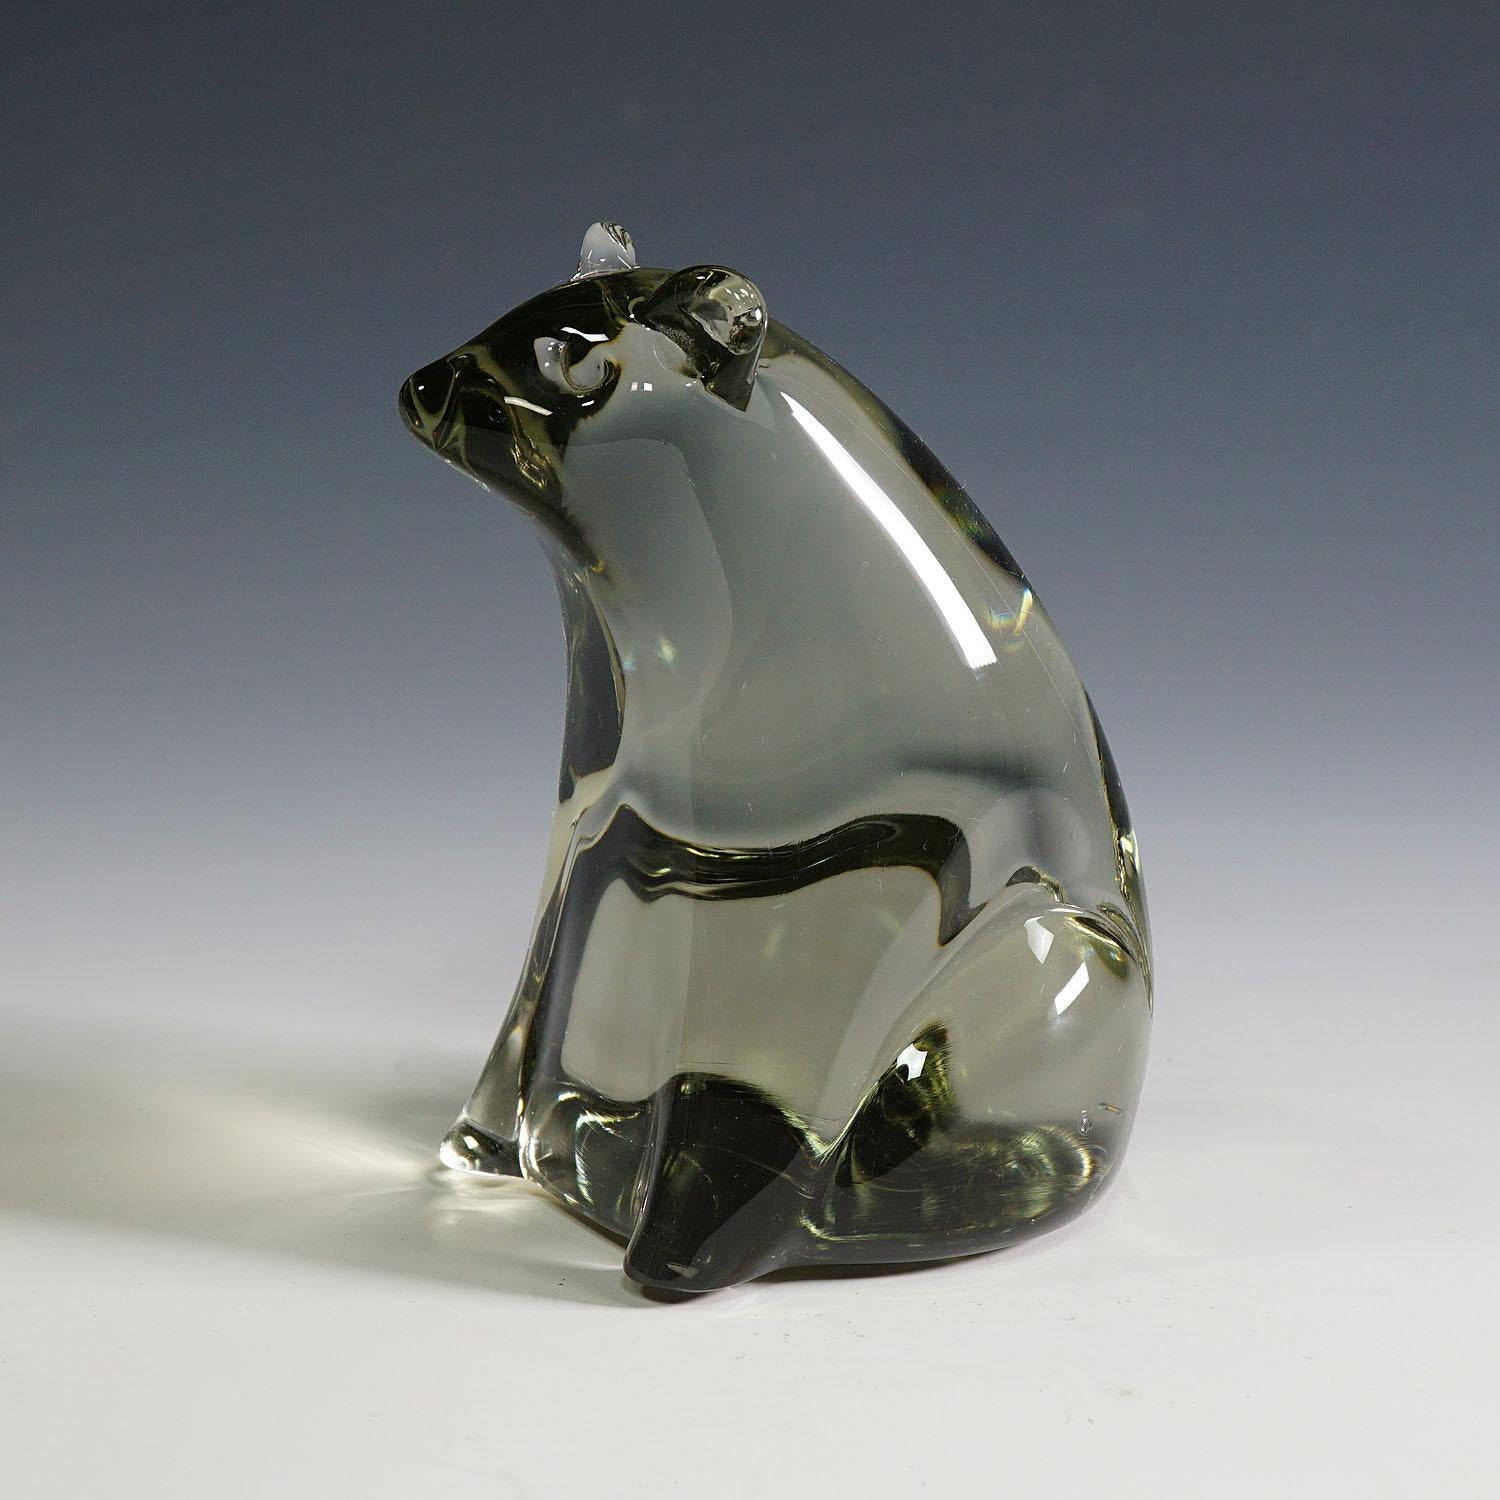 Sculpture en verre d'art en forme d'ours Design/One par Livio Seguso, vers les années 1970

Sculpture stylisée d'un ours en verre massif gris fumée. Il est fabriqué à la main dans la manufacture de verre Gral, en Allemagne. Conçue par l'artiste